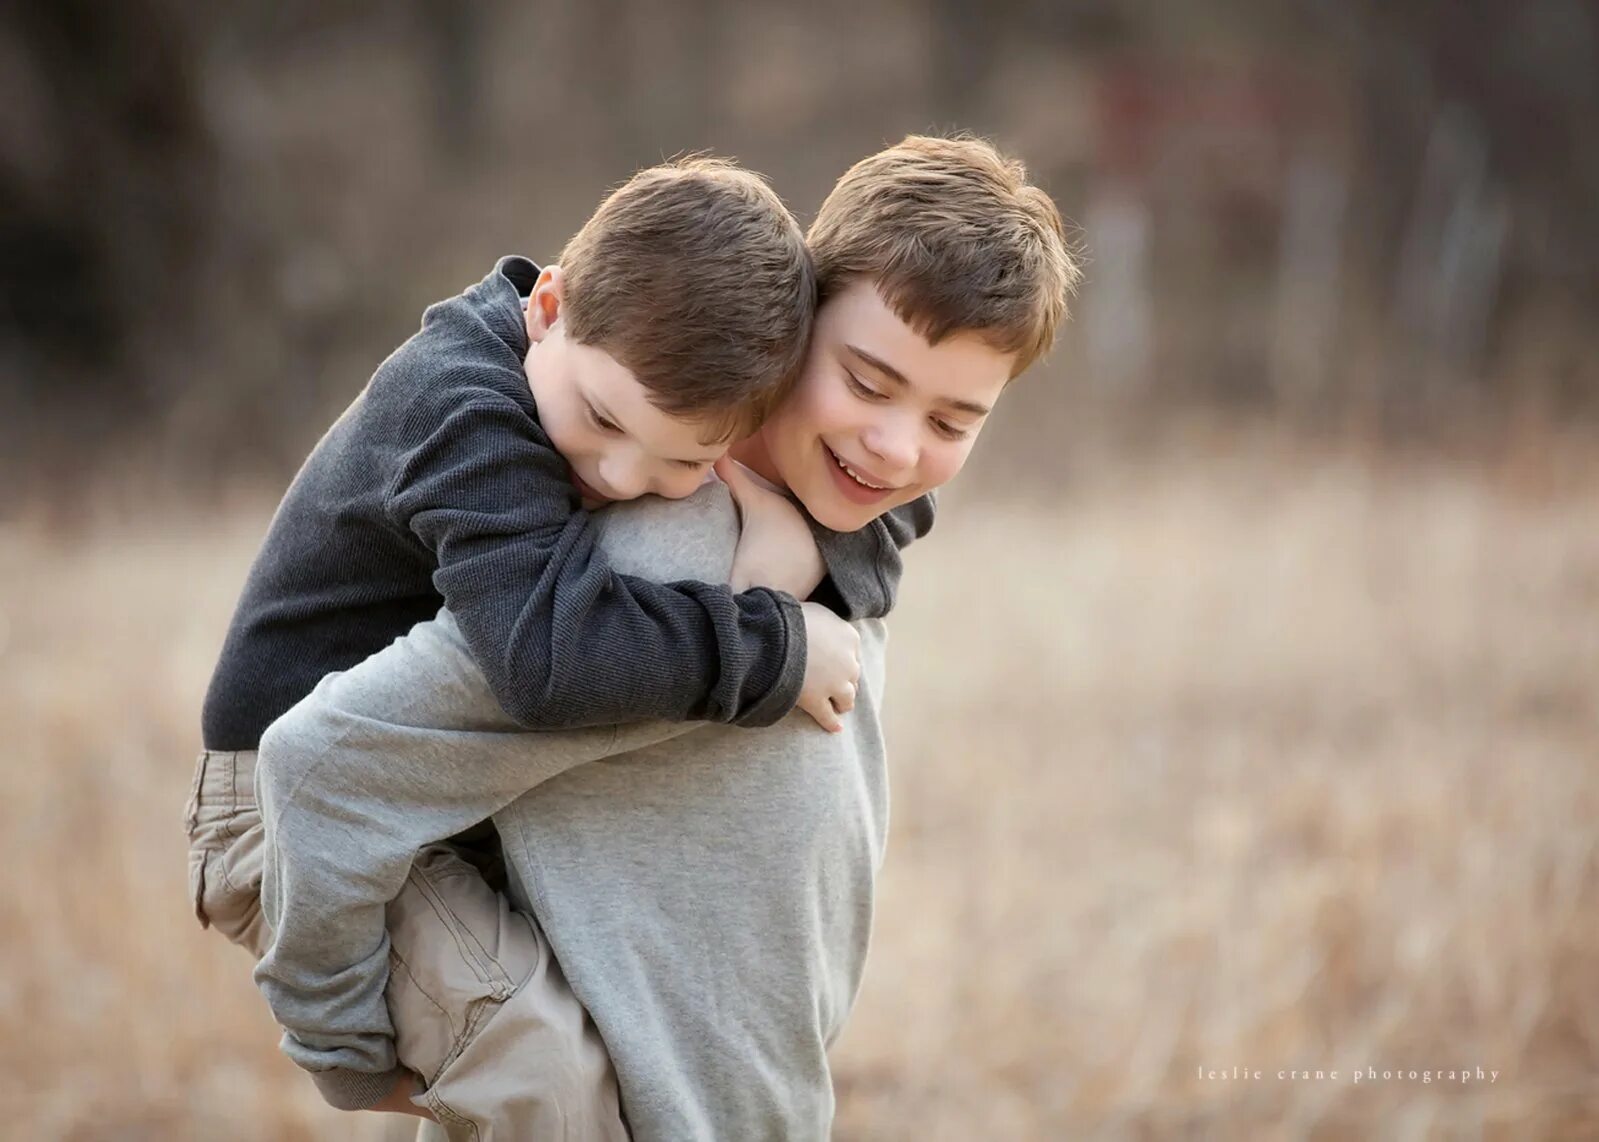 Мальчик насколько. Мальчики обнимаются. Два пальчика обнимаются. Два мальчика. Два мальчика обнимаются.